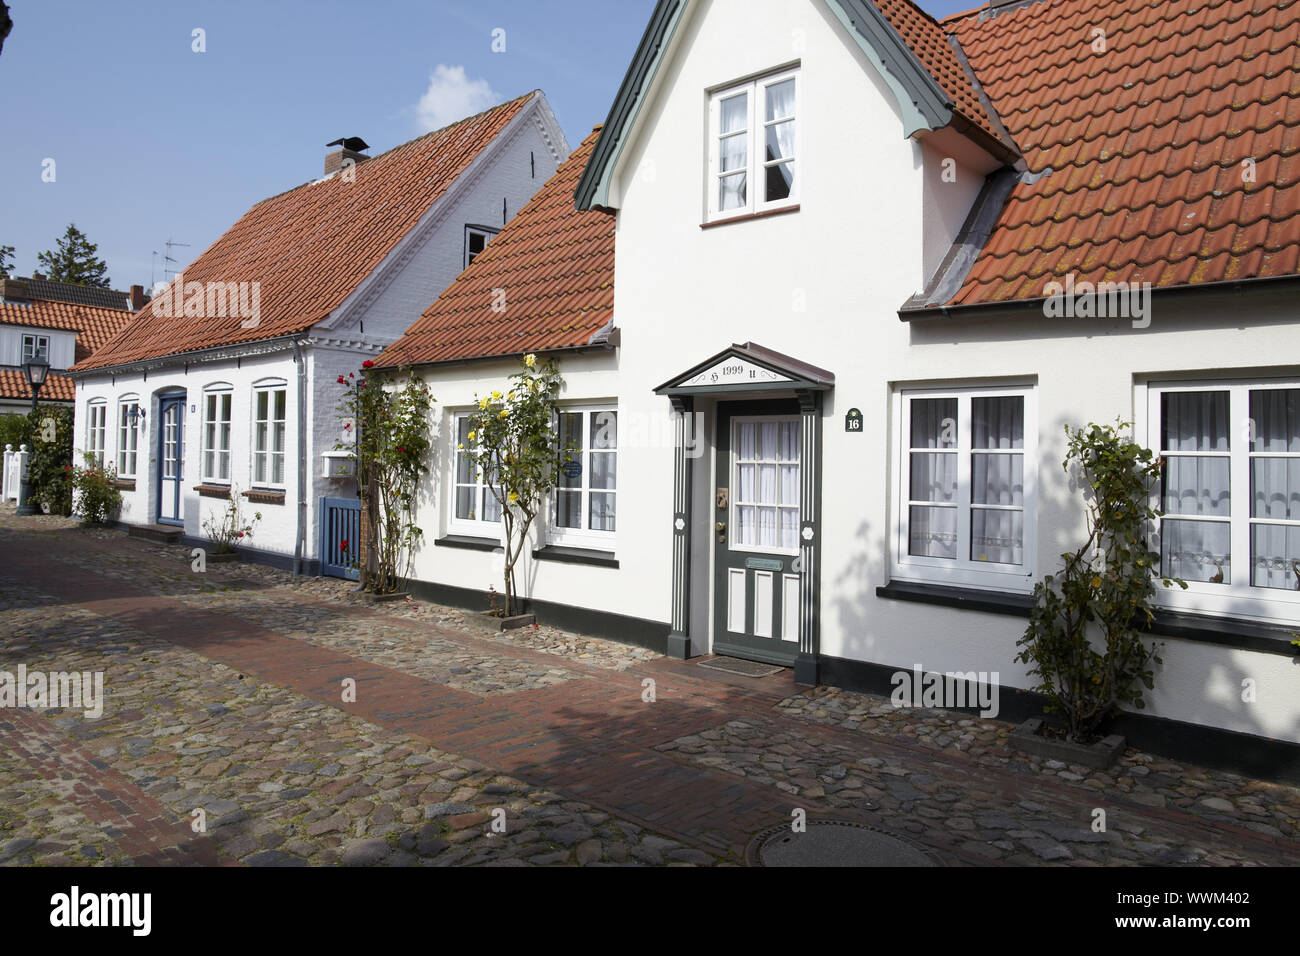 Wyk (Föhr) - Friesian house Stock Photo